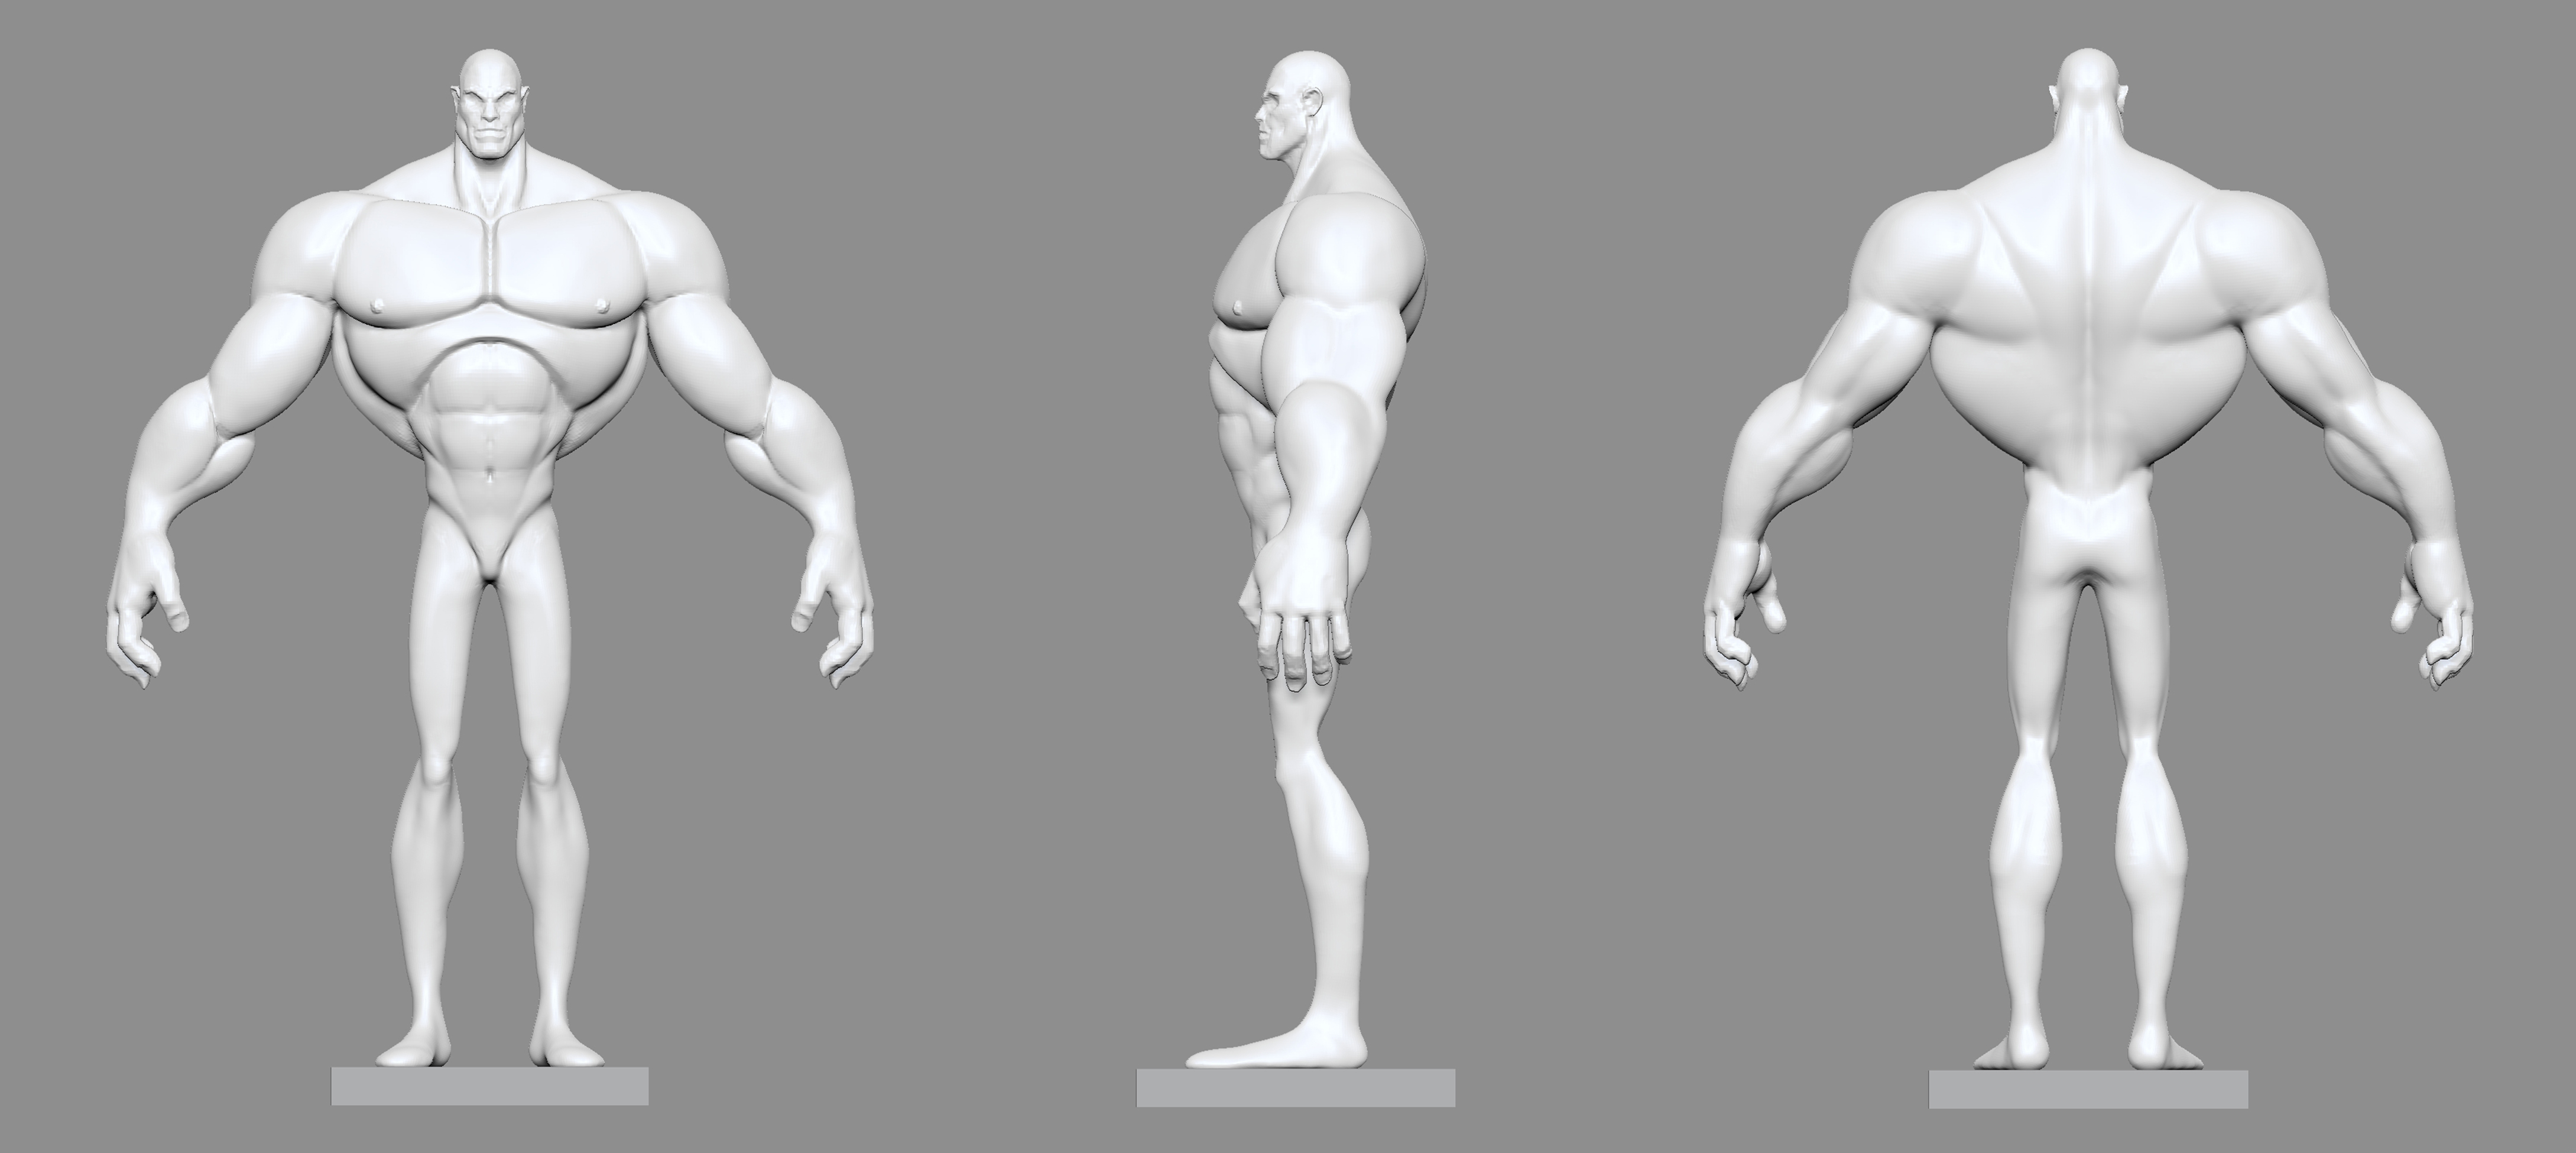 Как сделать standing. Референс для 3d моделирования анатомия. Референсы людей для моделирования. Скетчи персонажей для моделирования. Эскиз персонажа для моделирования.